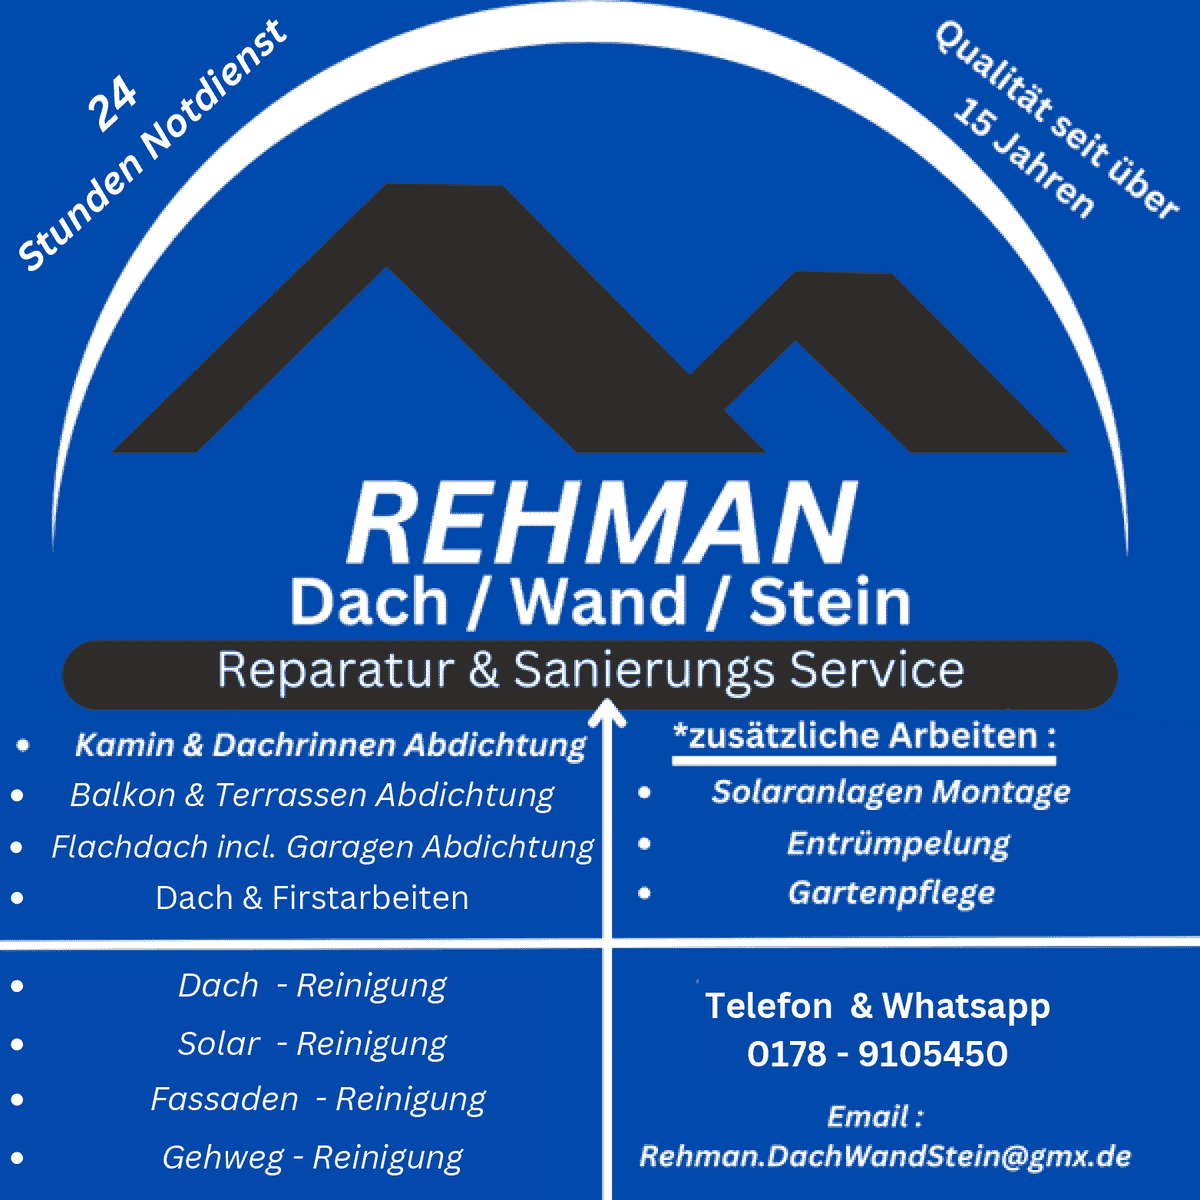 Rehmann Dach Wand Stein Reparatur & Sanierungs Service